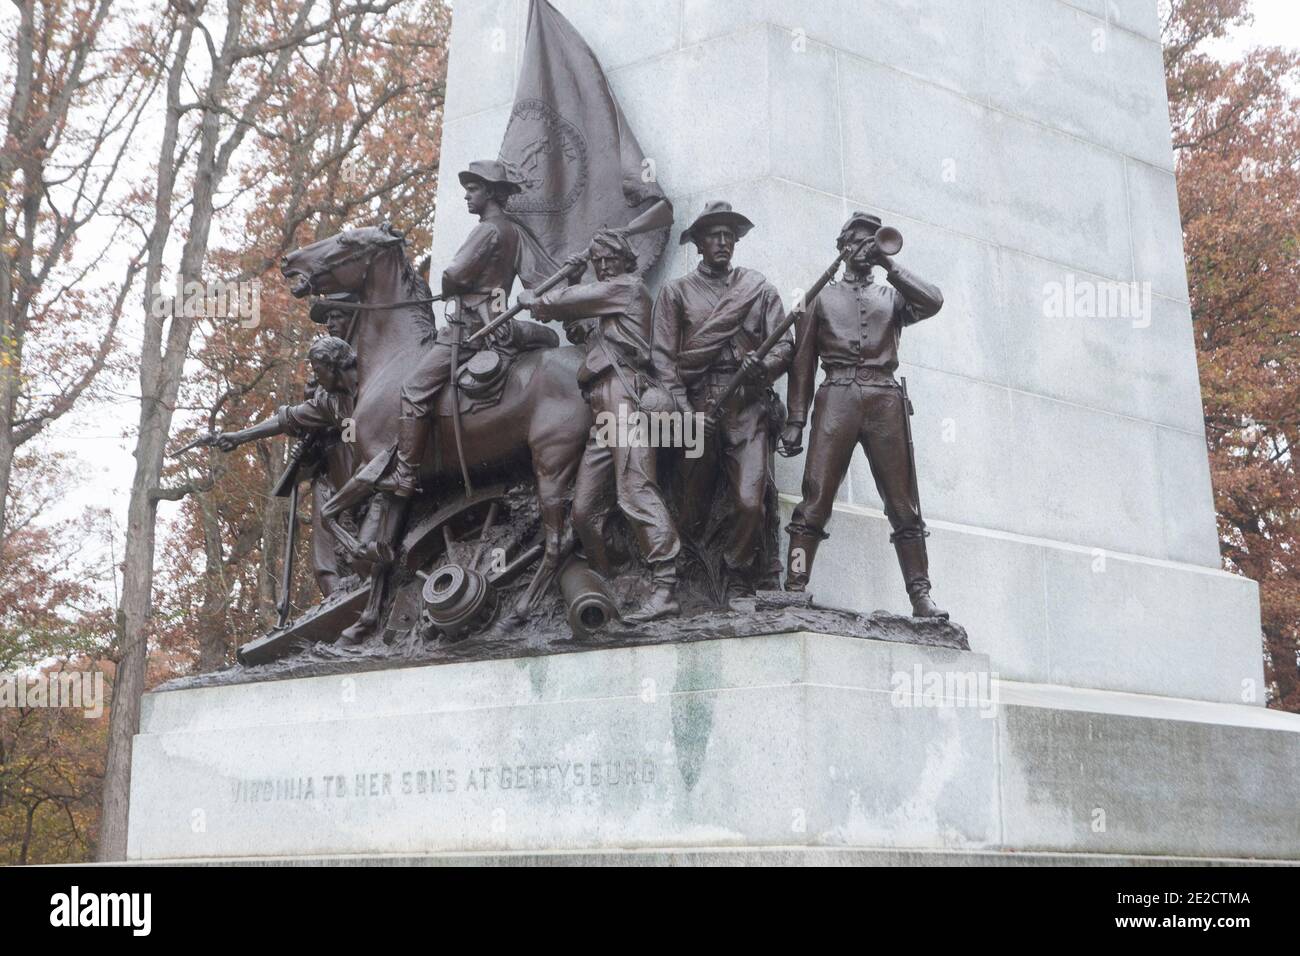 Una estatua en honor al luchador de Virginia que luchó bajo el mando del General Lee en la guerra civil en Gettysburg, Pensilvania. Foto de stock